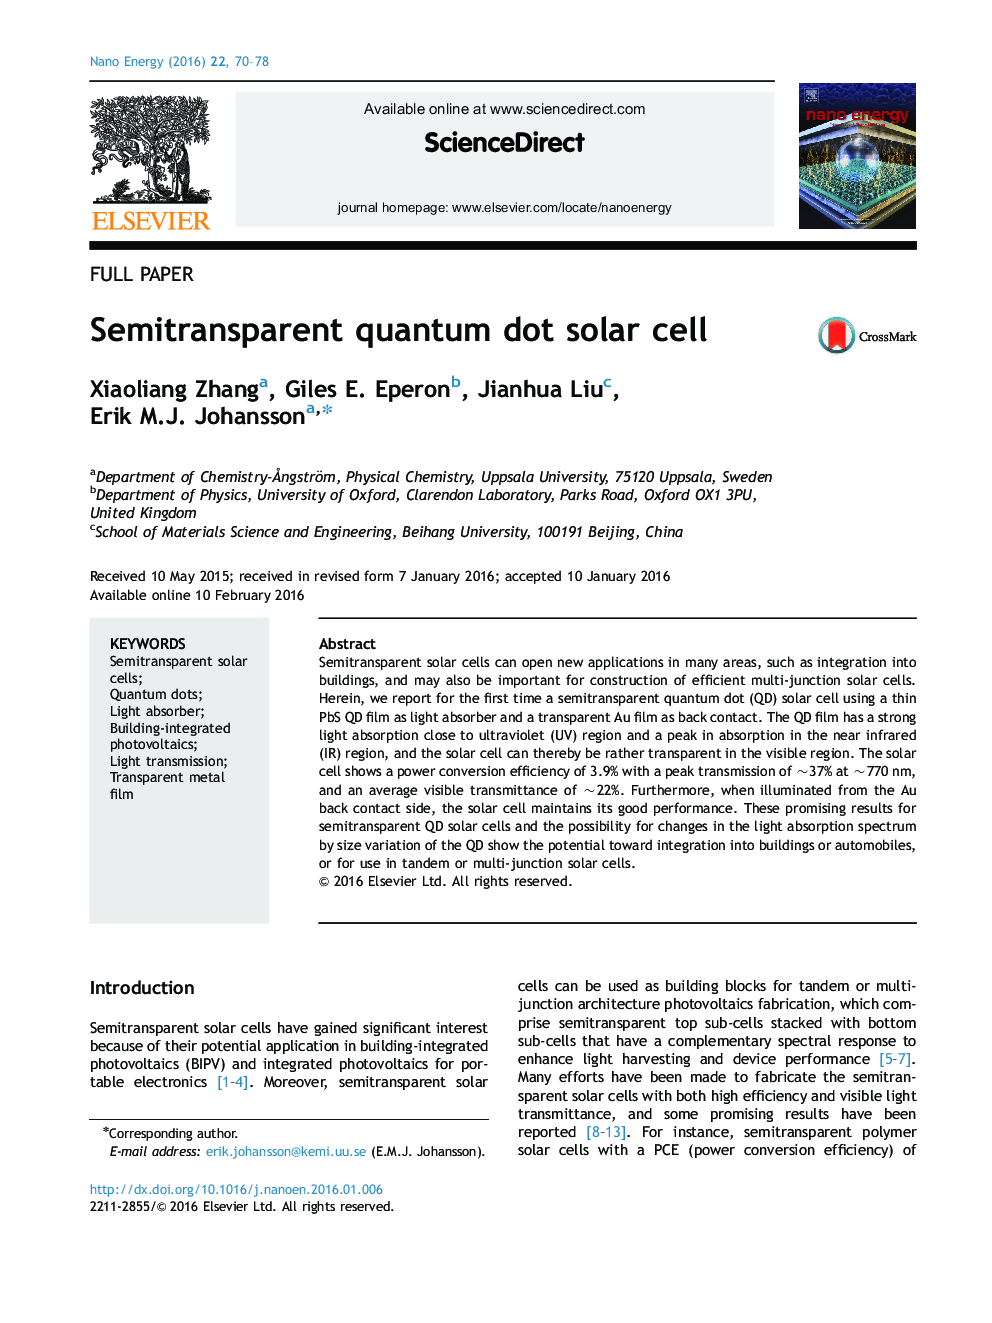 Semitransparent quantum dot solar cell